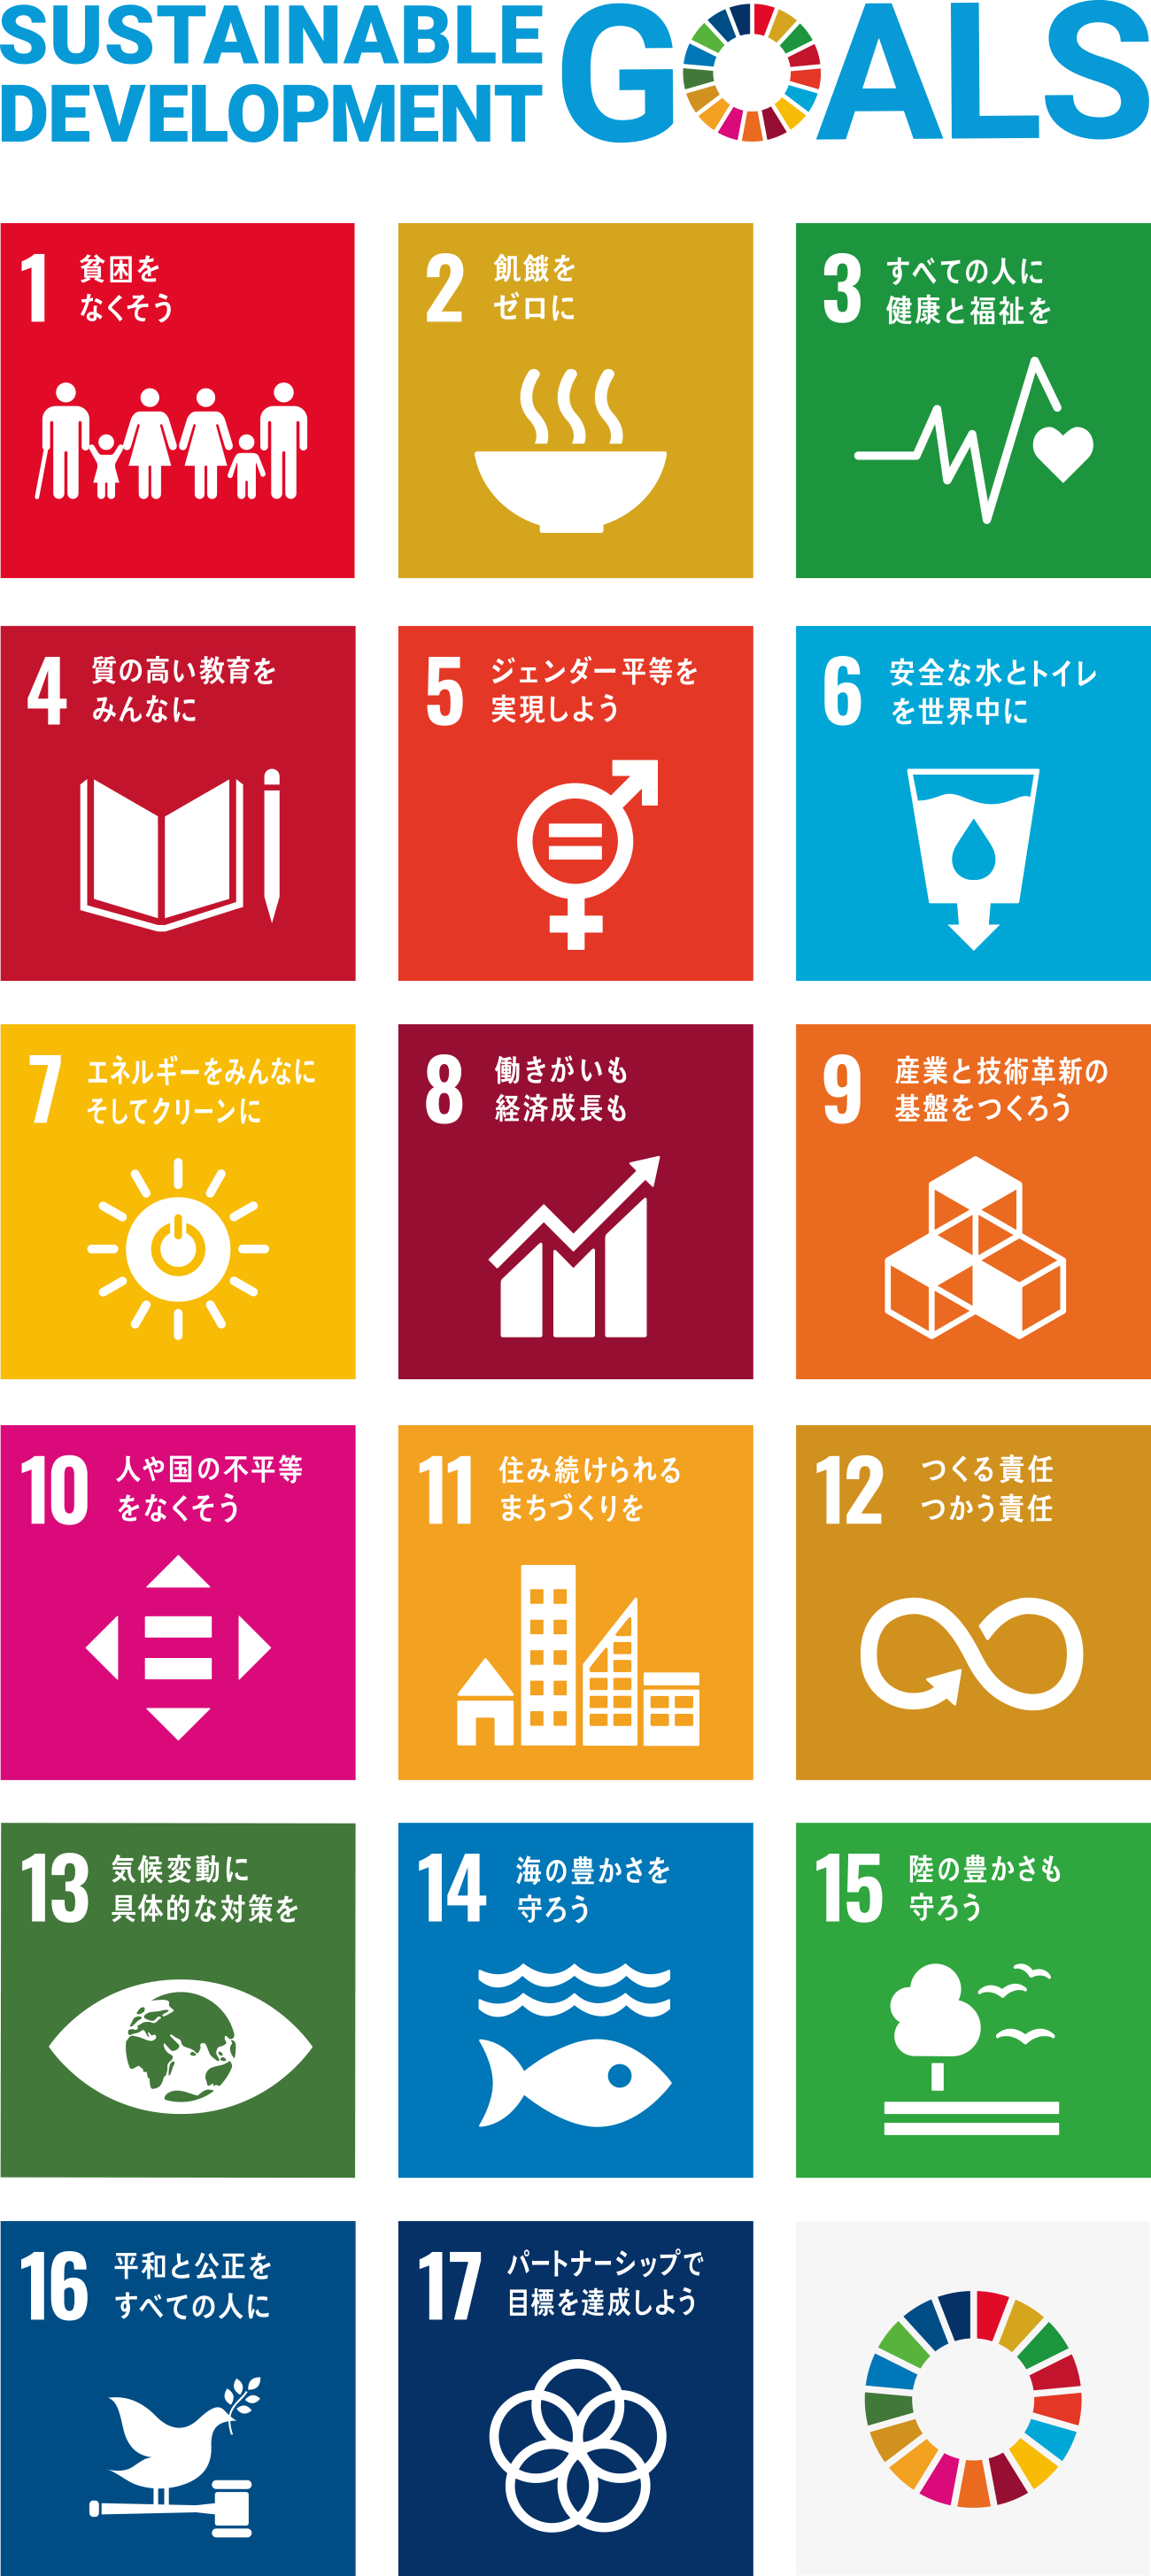 all goals of SDGs